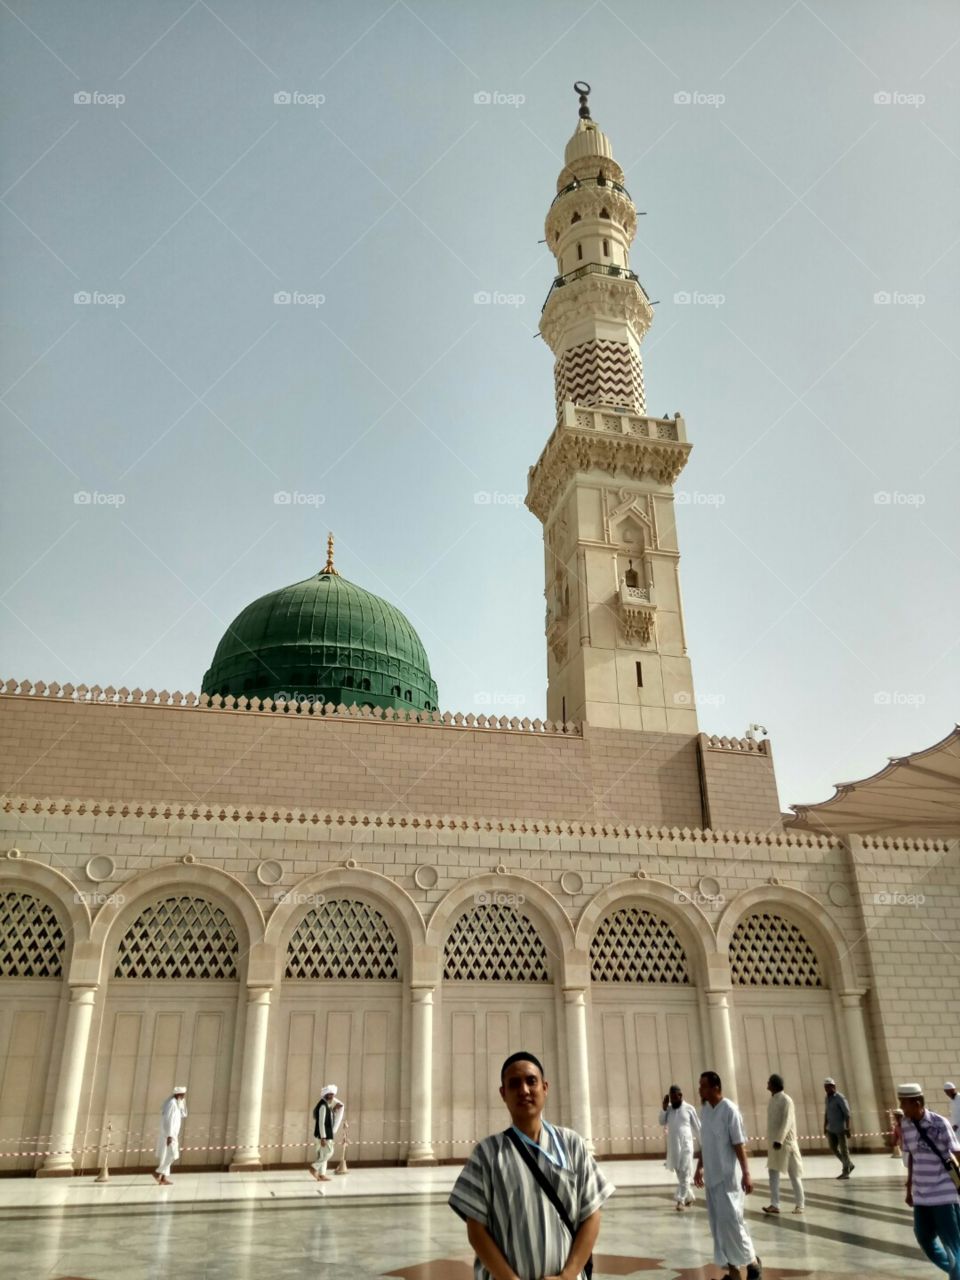 Minaret, Architecture, Religion, Travel, Dome